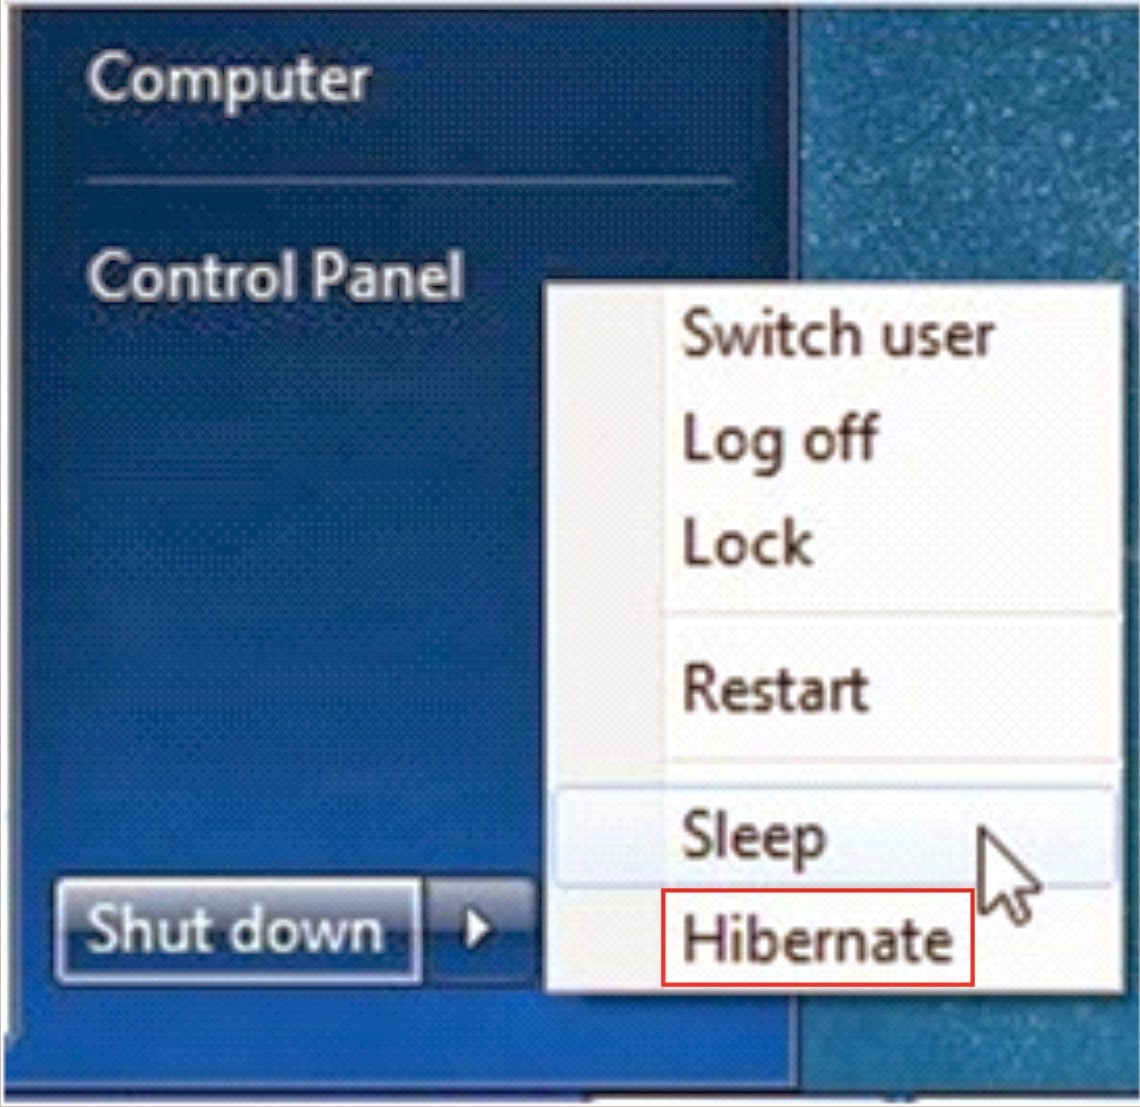 Fungsi Hibernate Di Windows 7 Untuk Laptop Atau Notebook